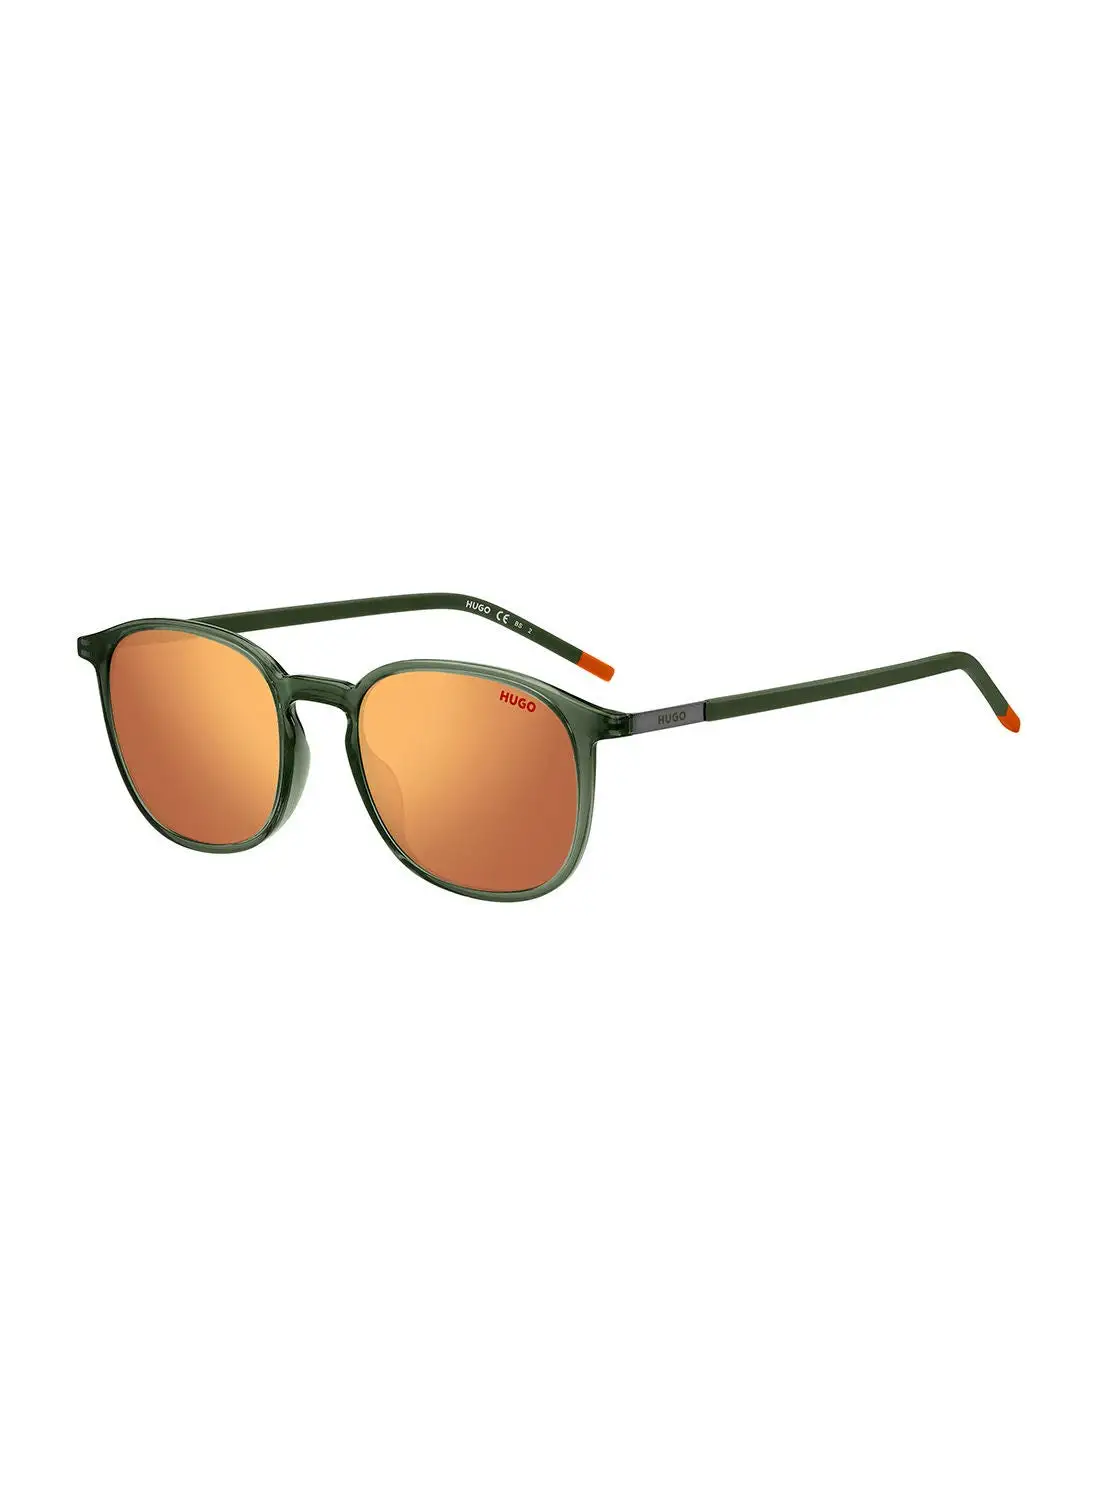 HUGO Men's UV Protection Round Sunglasses - Hg 1229/S Green 52 - Lens Size: 52 Mm